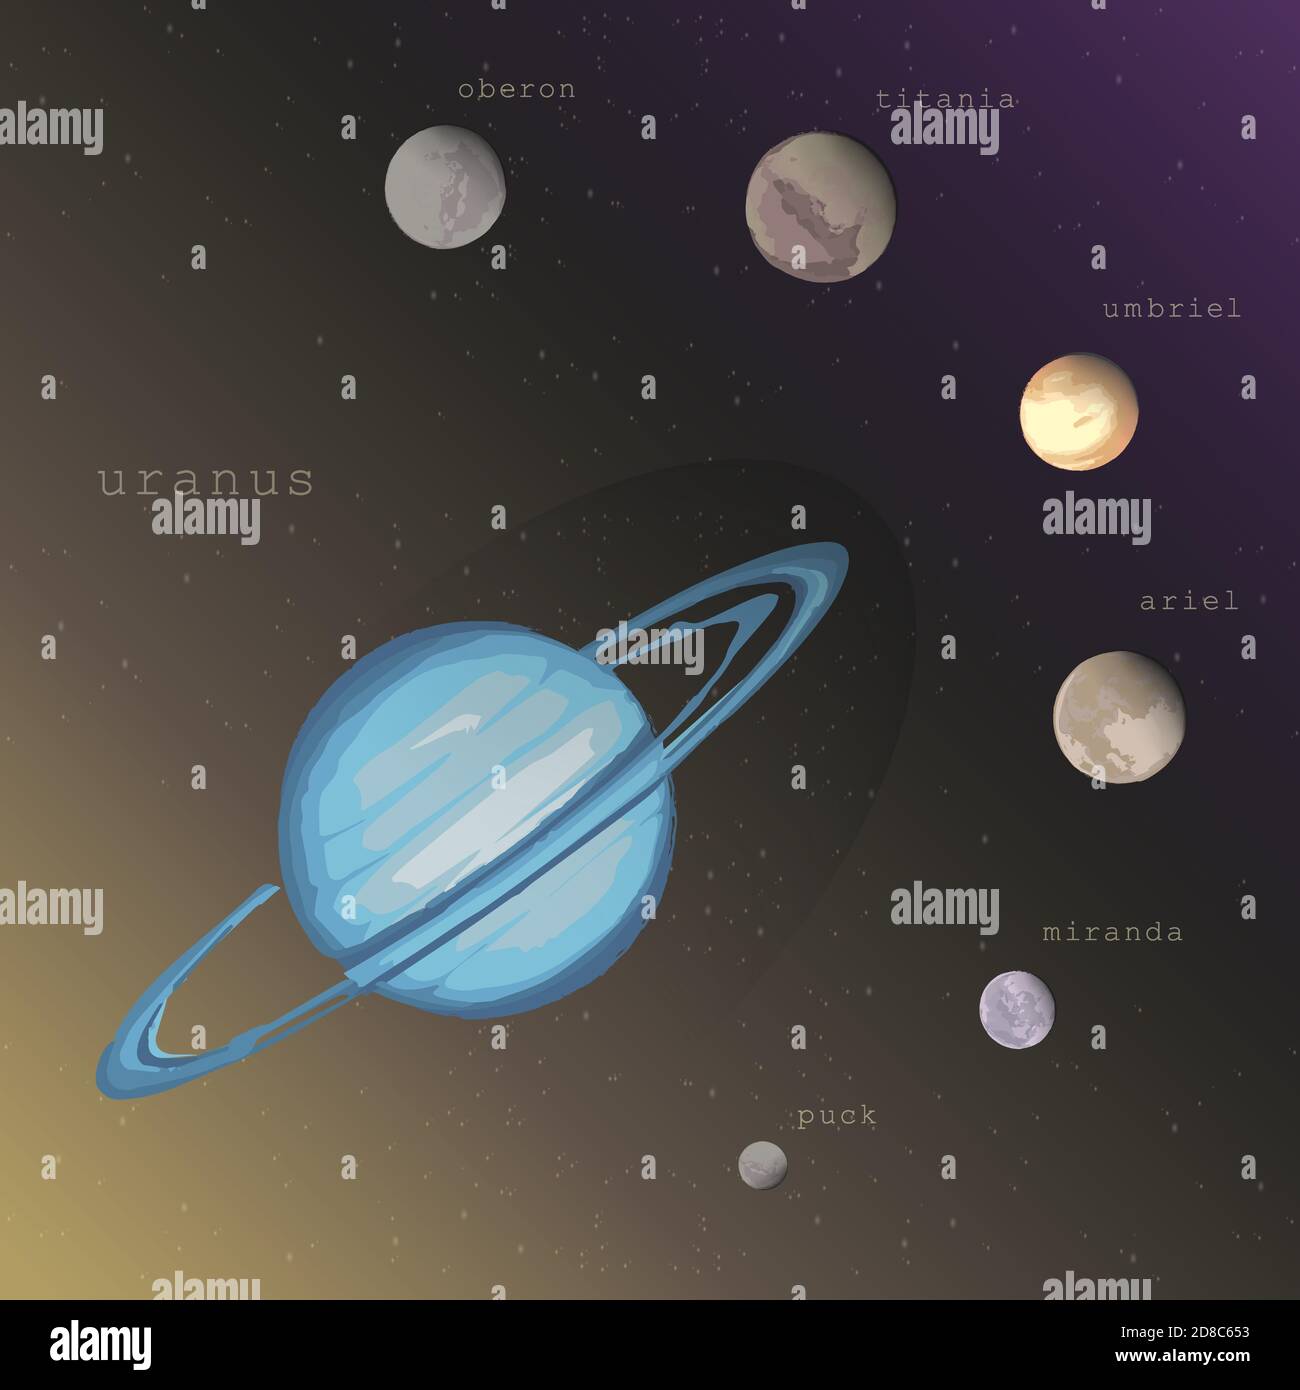 urano pianeta con satelliti lune Puck Miranda Ariel Umbriel Titania Oberon sullo sfondo cosmico scuro profondo stellato. Vettore infografica illustrazione educativa sull'esplorazione spaziale astronomia Illustrazione Vettoriale